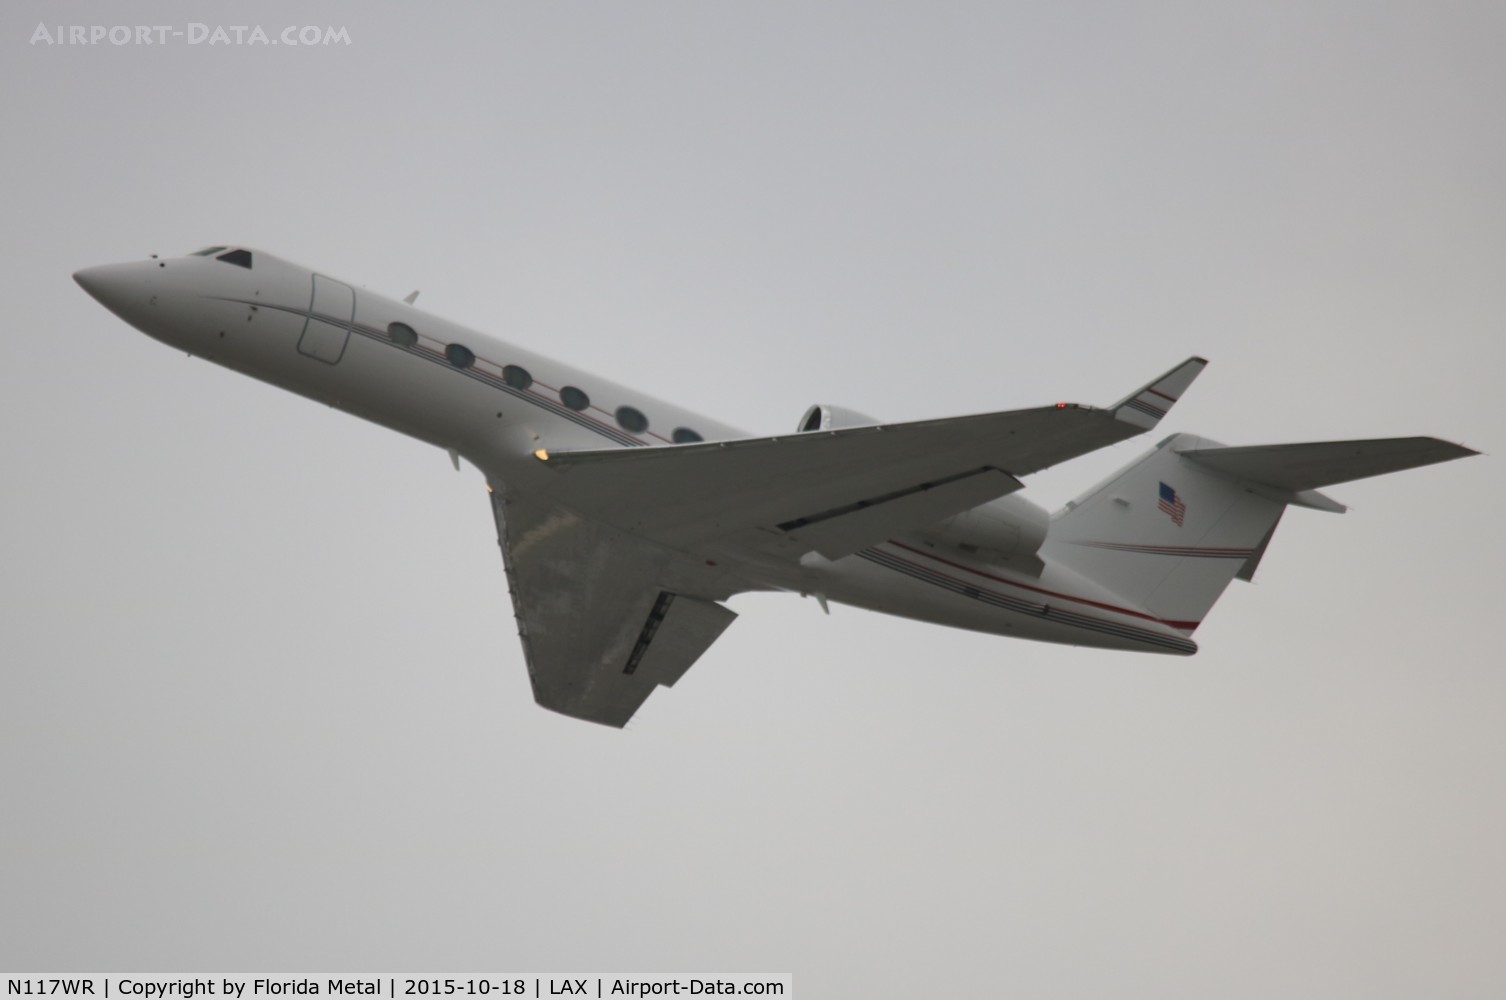 N117WR, 2005 Gulfstream Aerospace GIV-X (G350) C/N 4015, Gulfstream 350